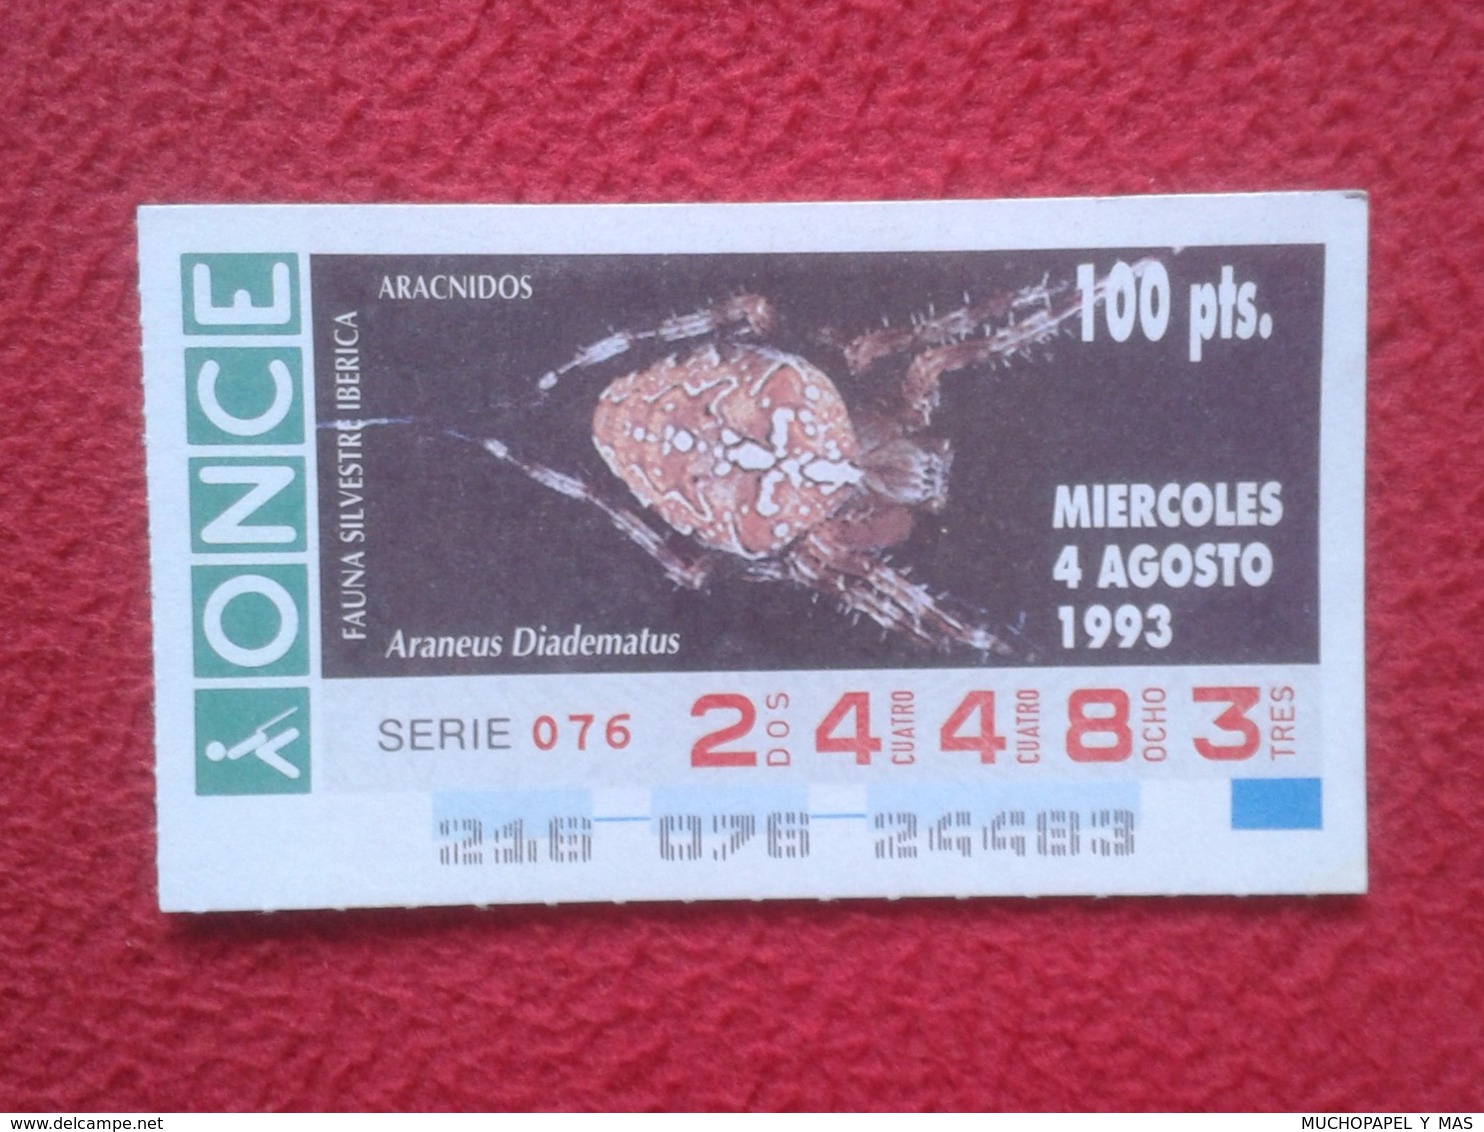 CUPÓN DE ONCE 1993 LOTTERY LOTERIE SPAIN LOTERÍA FAUNA FAUNE IBÉRICA ARÁCNIDOS ARAÑA ARAÑAS SPIDER ARAIGNÉE SPINNE VER - Billetes De Lotería